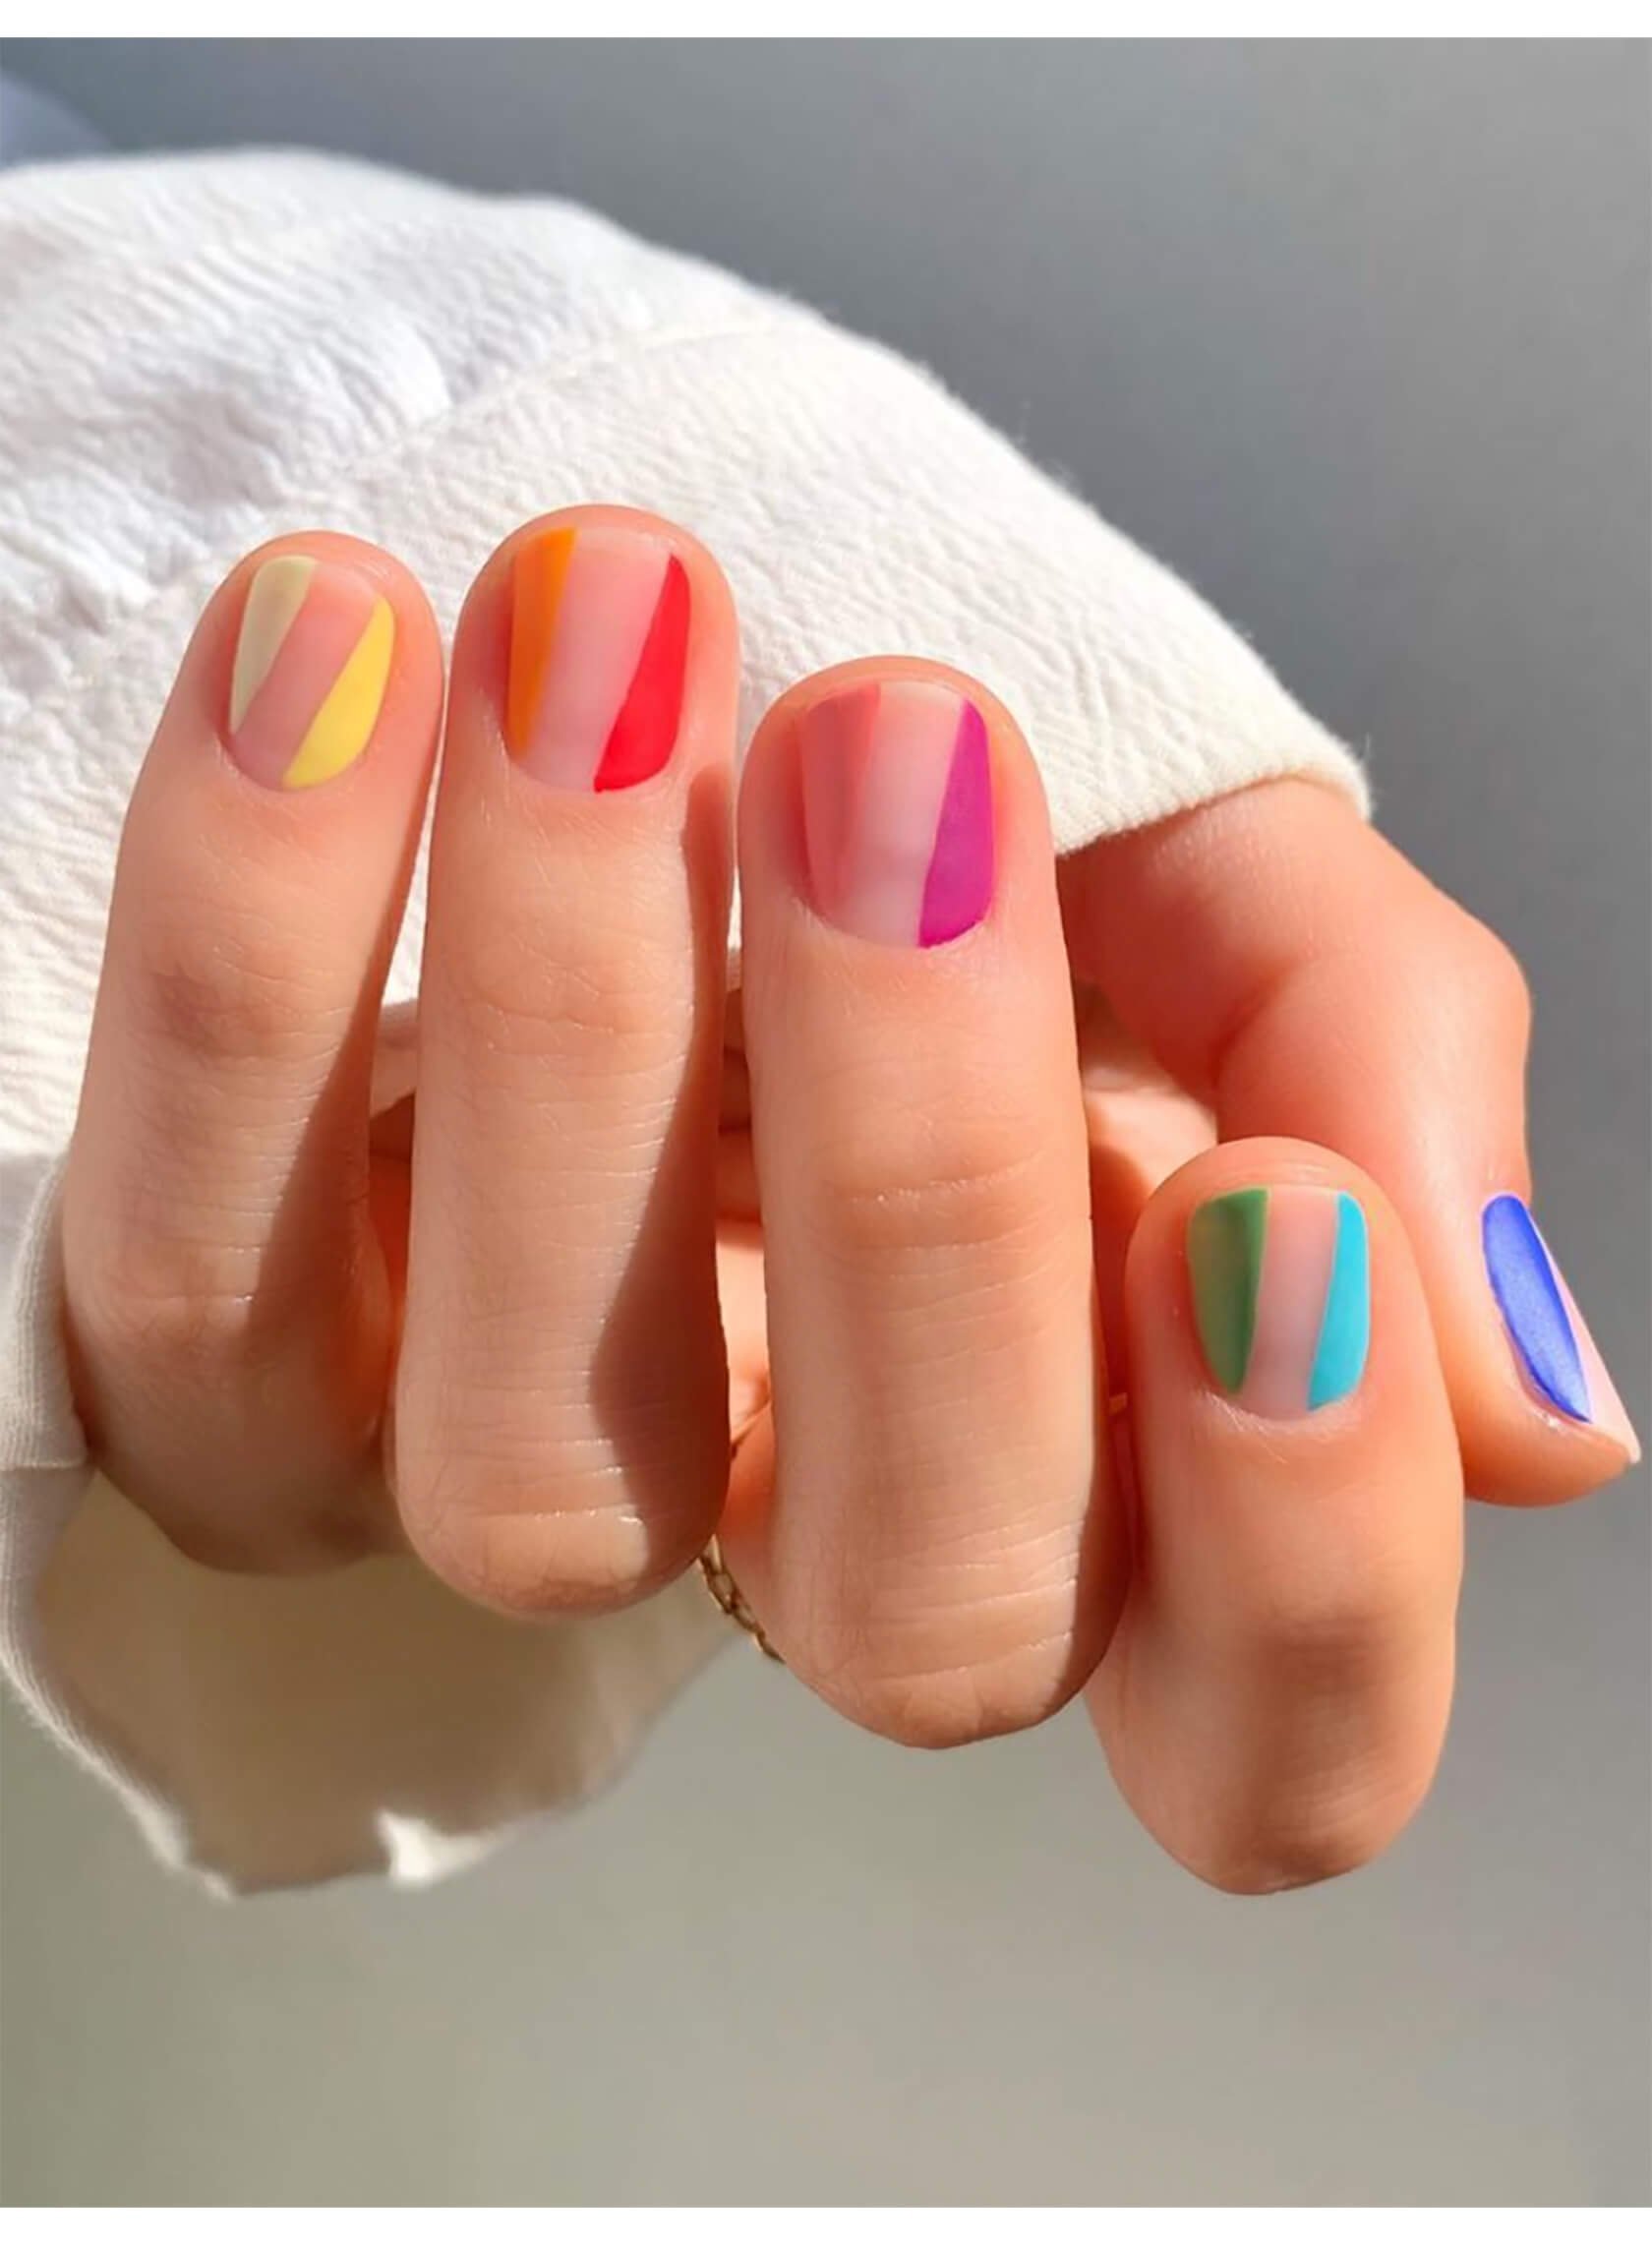 Цветной маникюр короткие ногти. Разноцветный маникюр. Многоцветный маникюр. Разноцветные ногти короткие. Модный маникюр разноцветный.